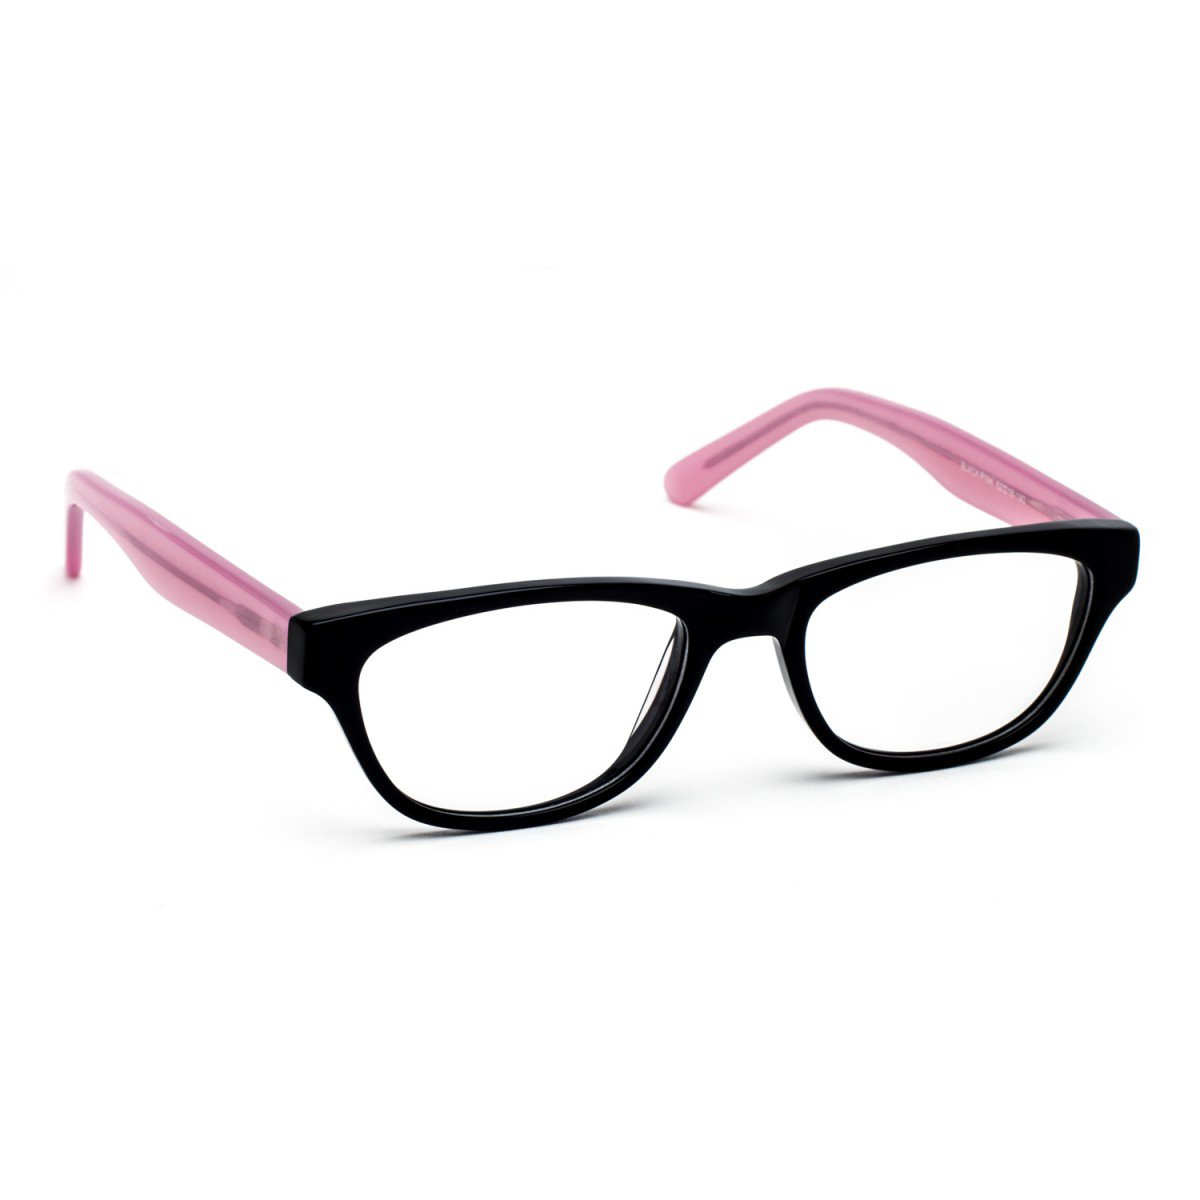 Pink And Black Glasses Frames